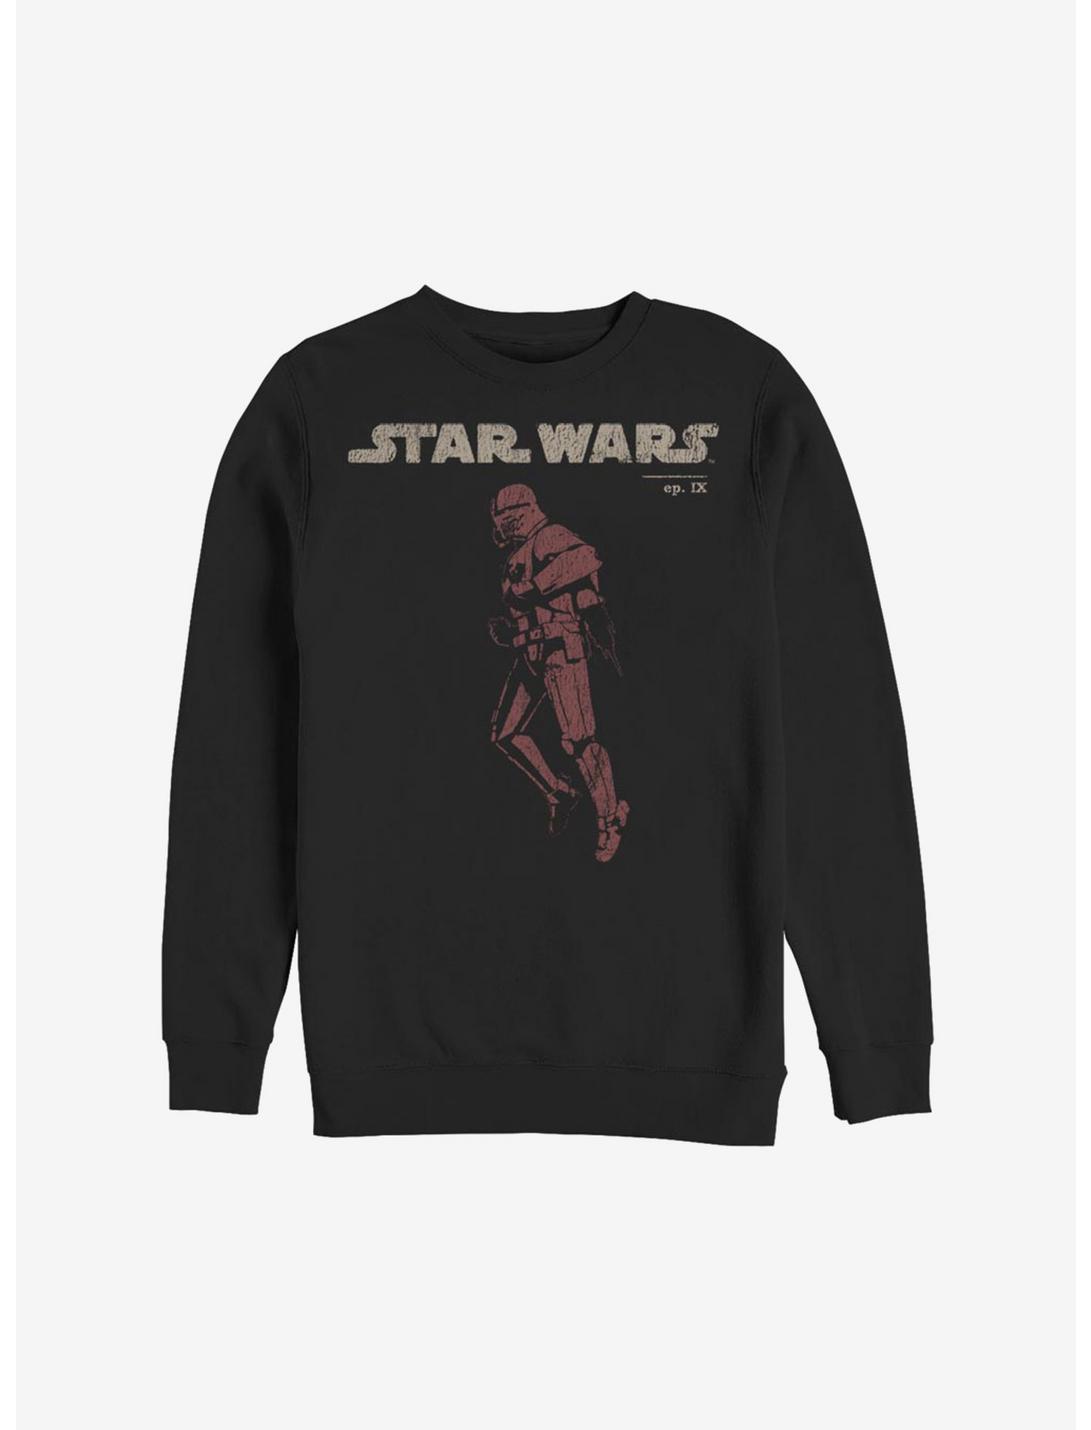 Star Wars Episode IX The Rise Of Skywalker Jet Red Sweatshirt, BLACK, hi-res